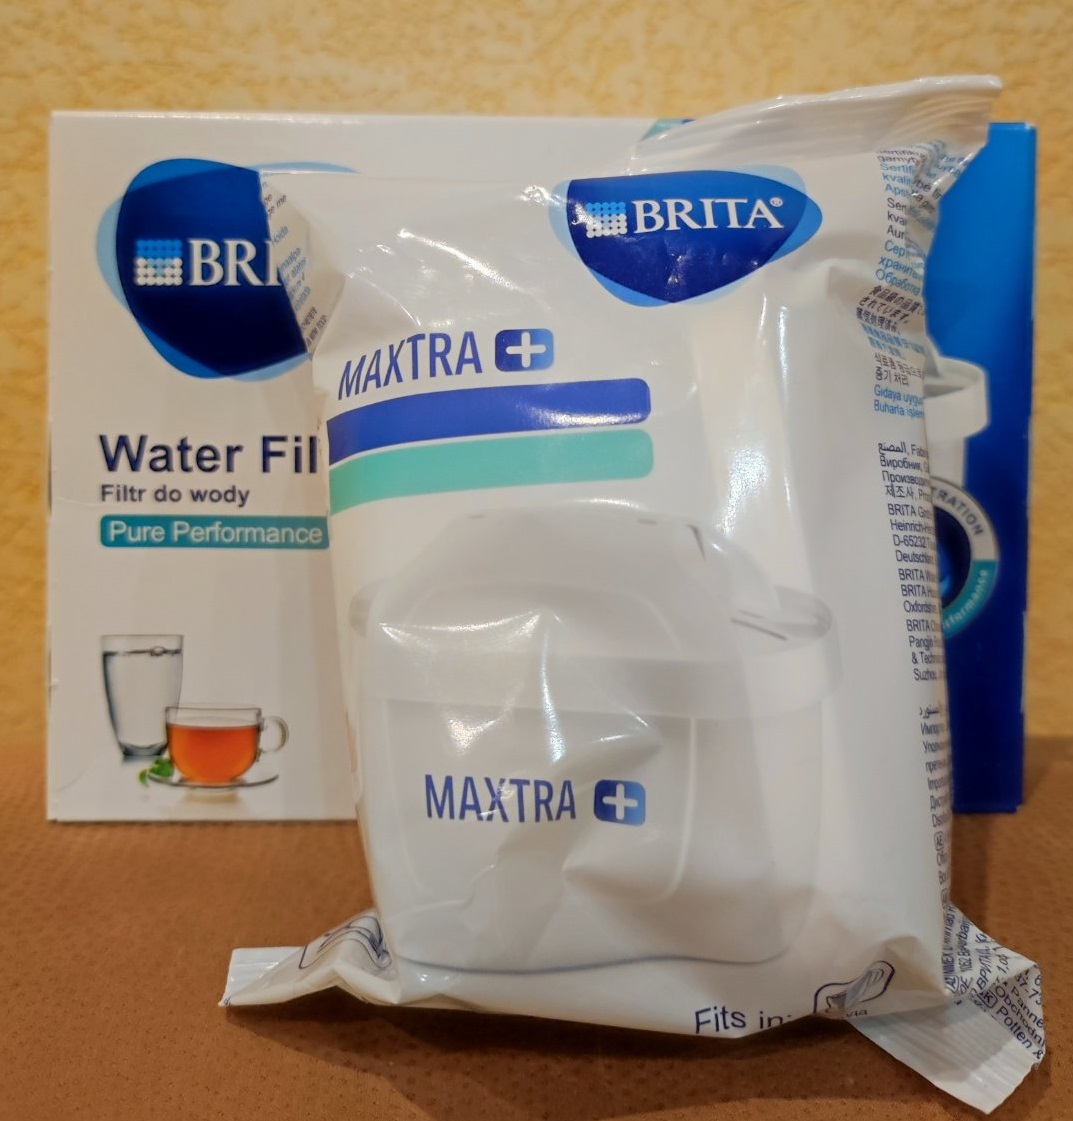 Картридж сменный 1шт Брита Макстра Brita Maxtra Plus Pure Performance Хлор, Органика, Смягчение воды, Германия, 1шт.